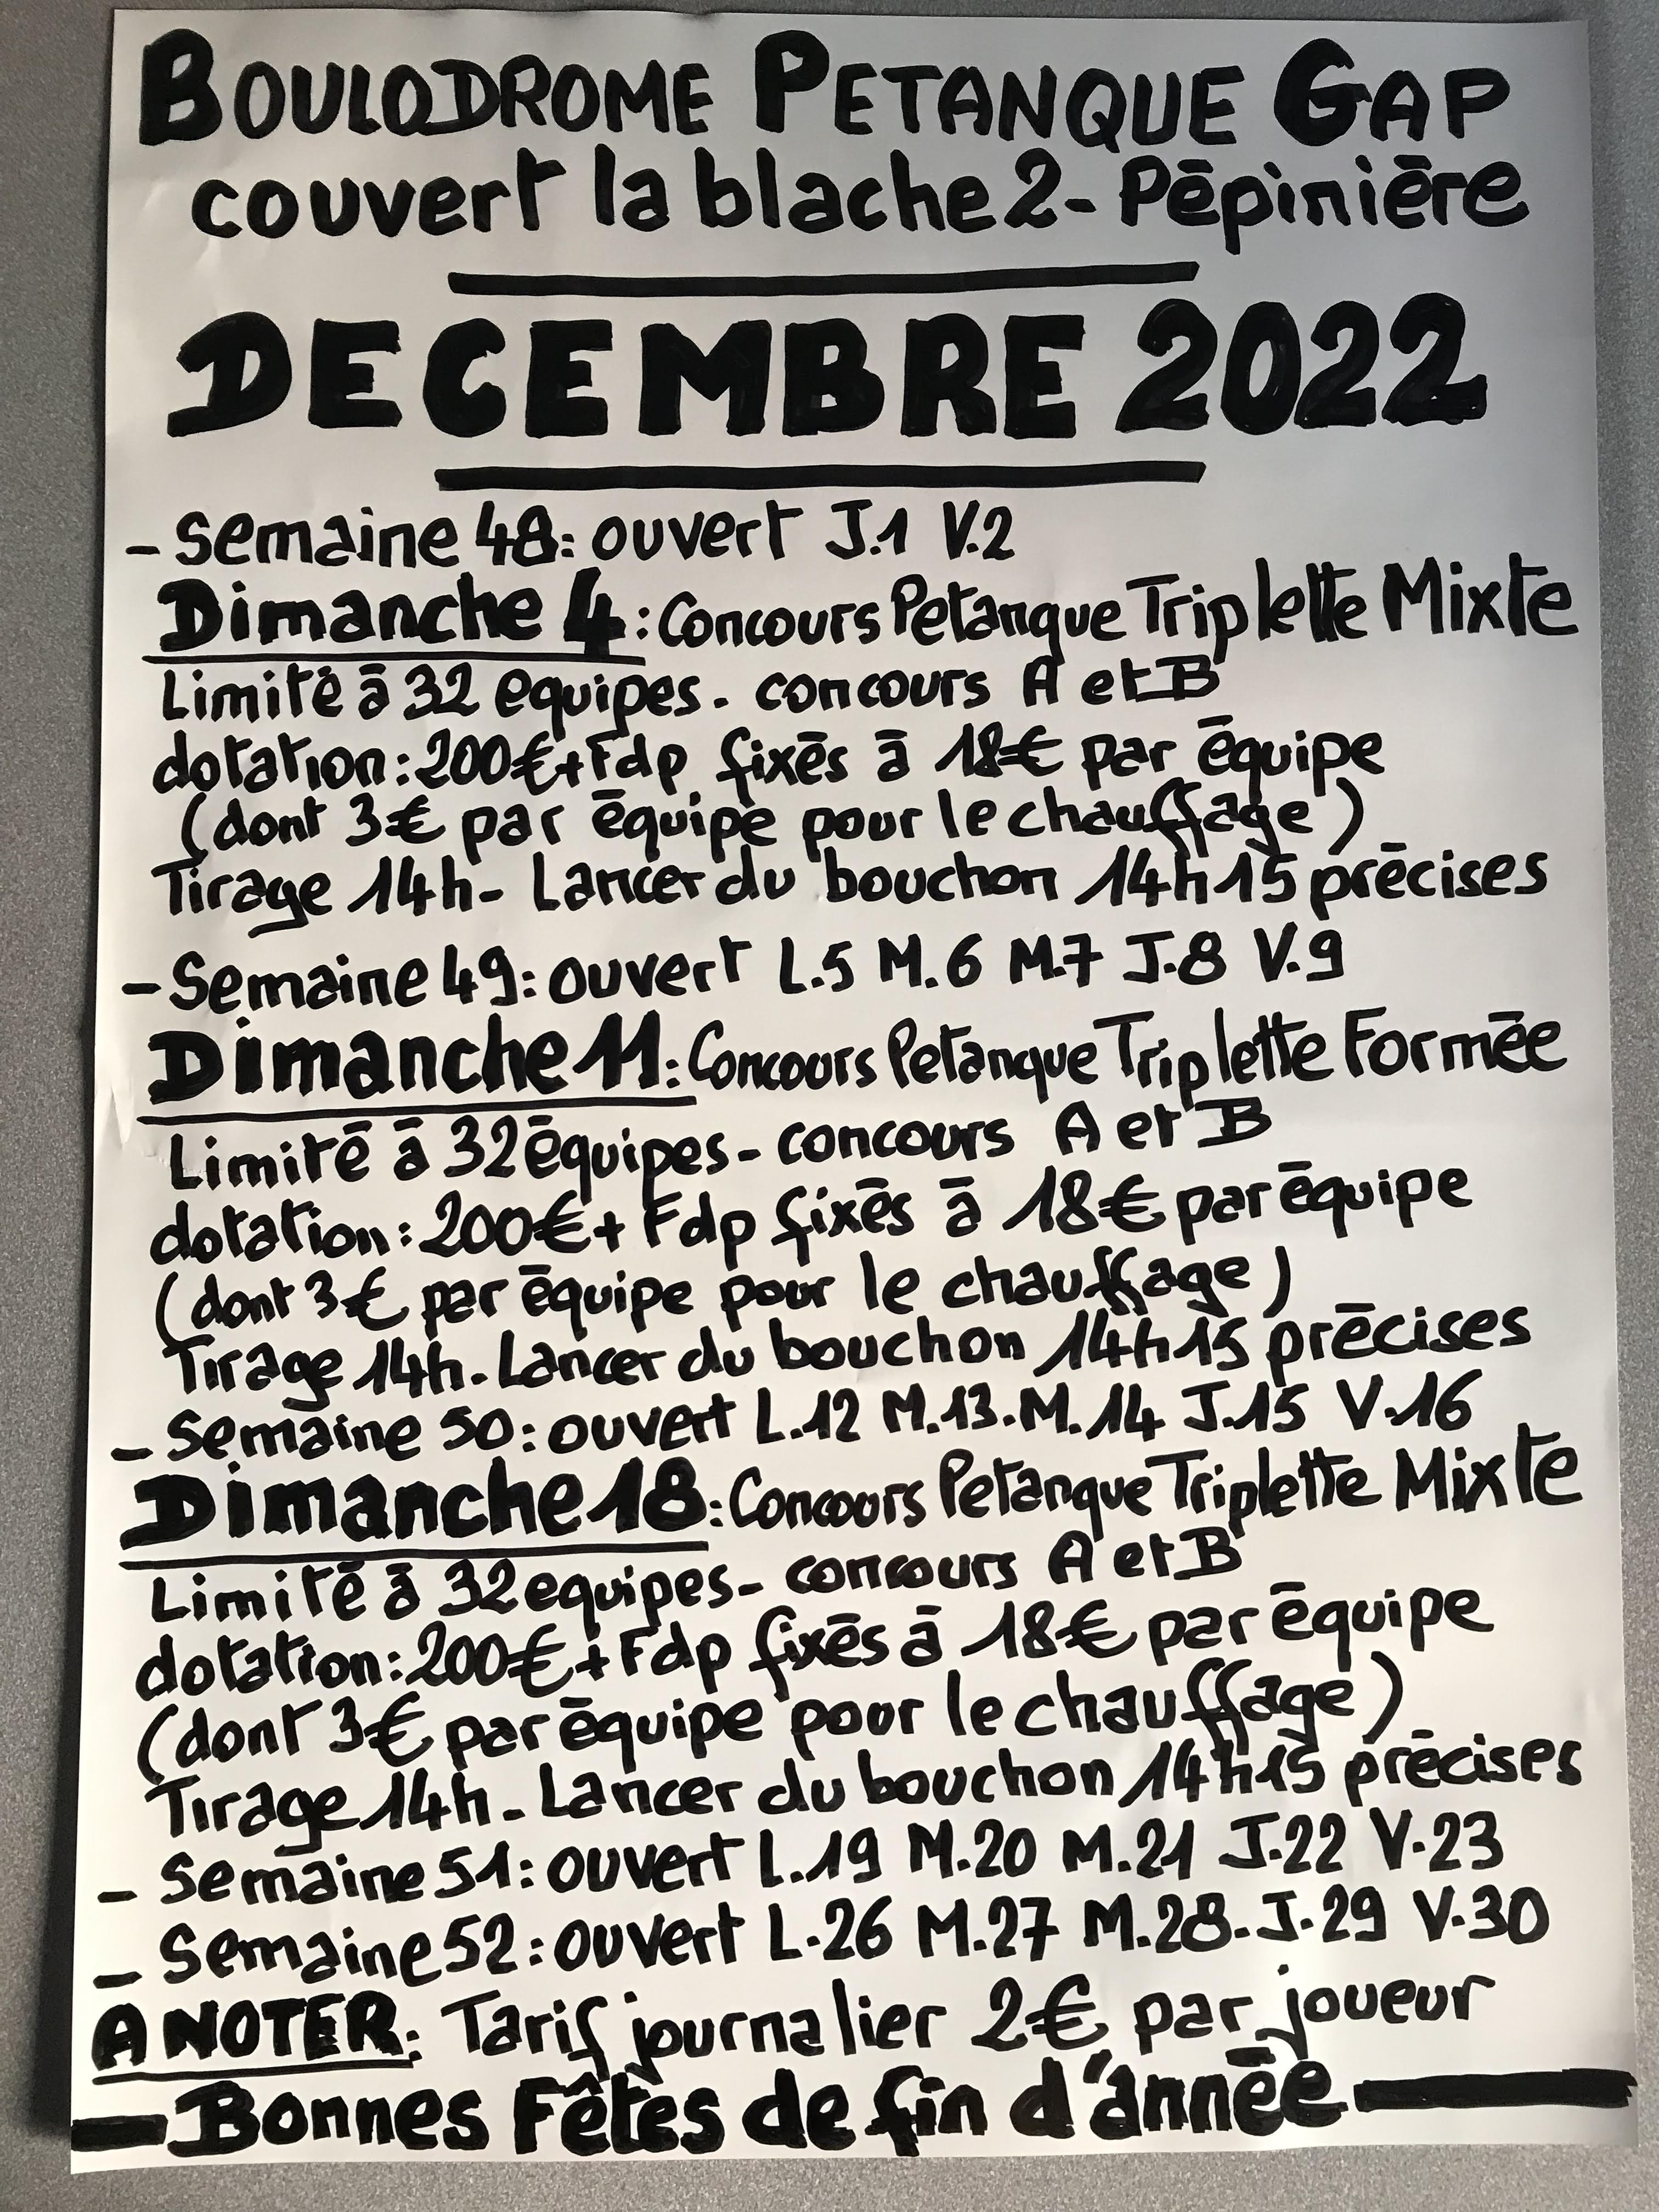 TRIPLETTE MIXTE PETANQUE DIMANCHE 18 DECEMBRE 2022 - Boulodrome couvert GAP-